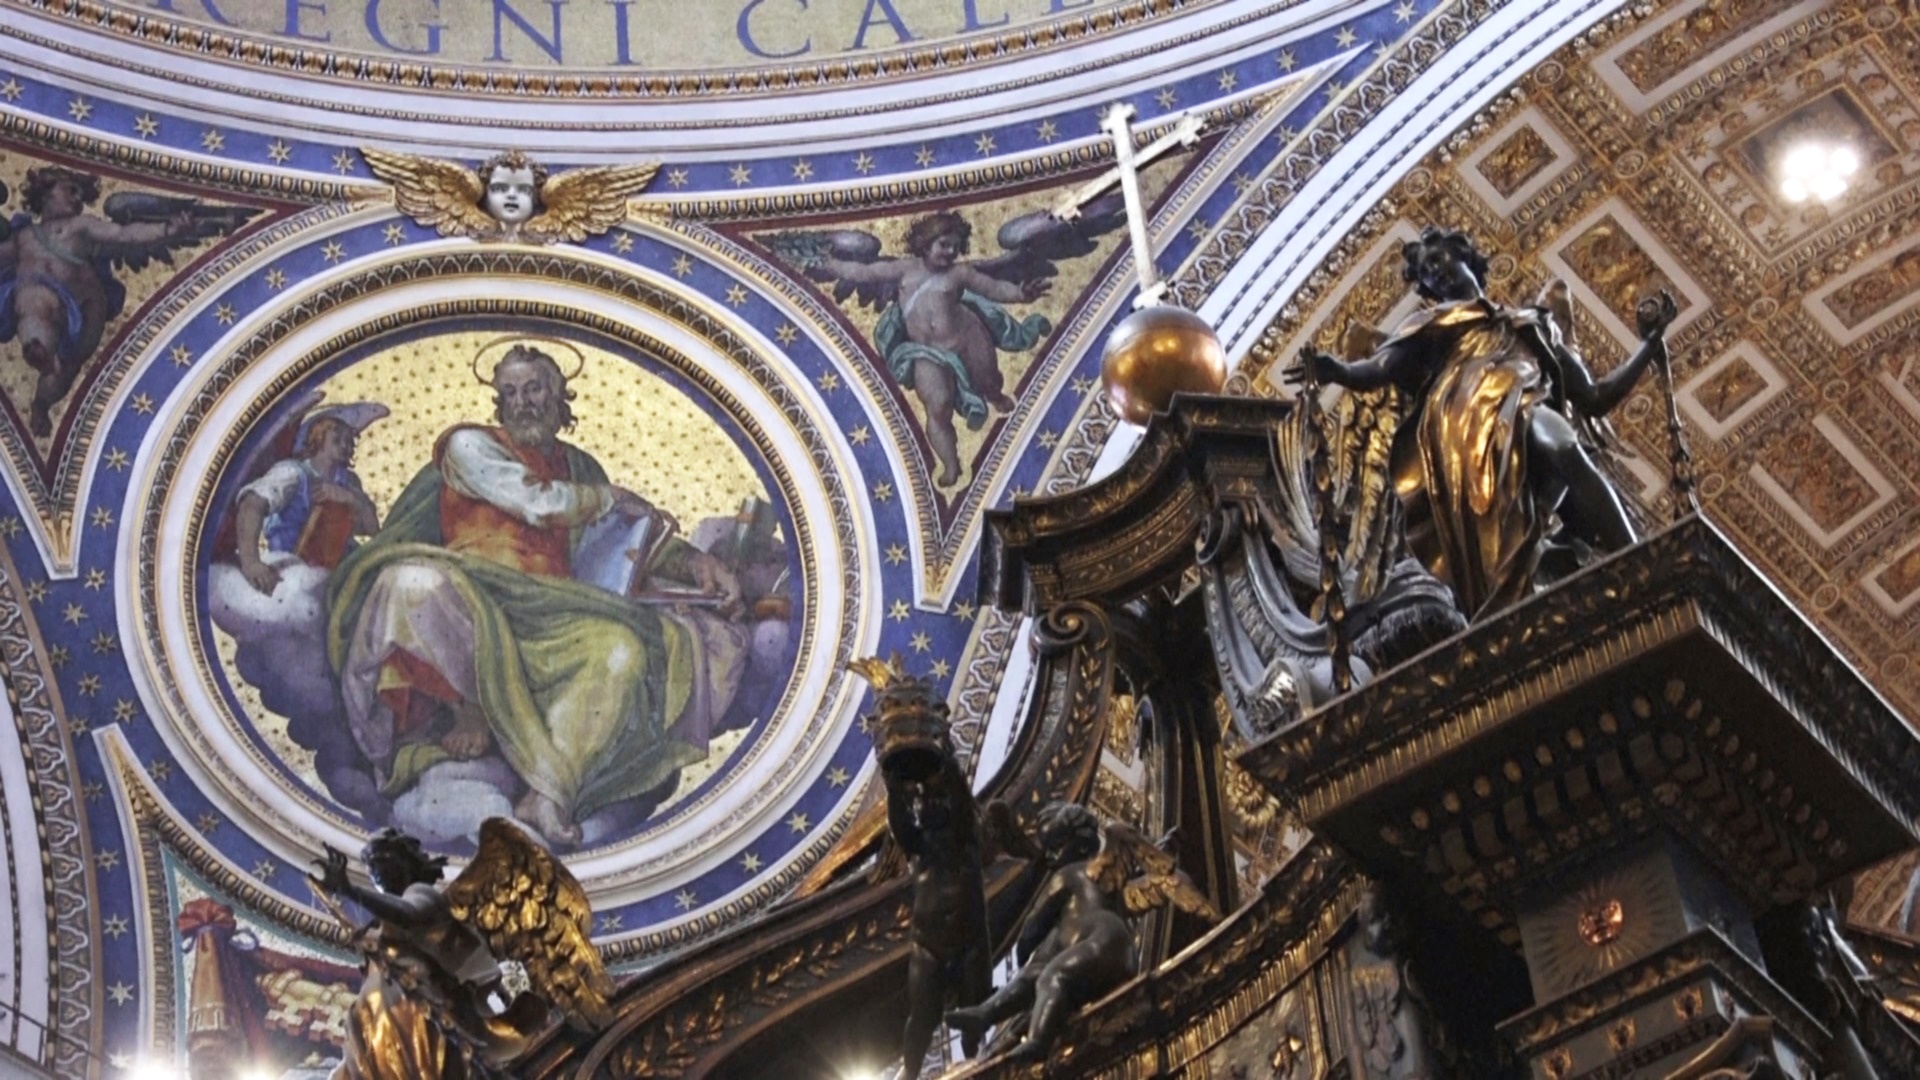 В Ватикане реставрируют центральный элемент собора Святого Петра